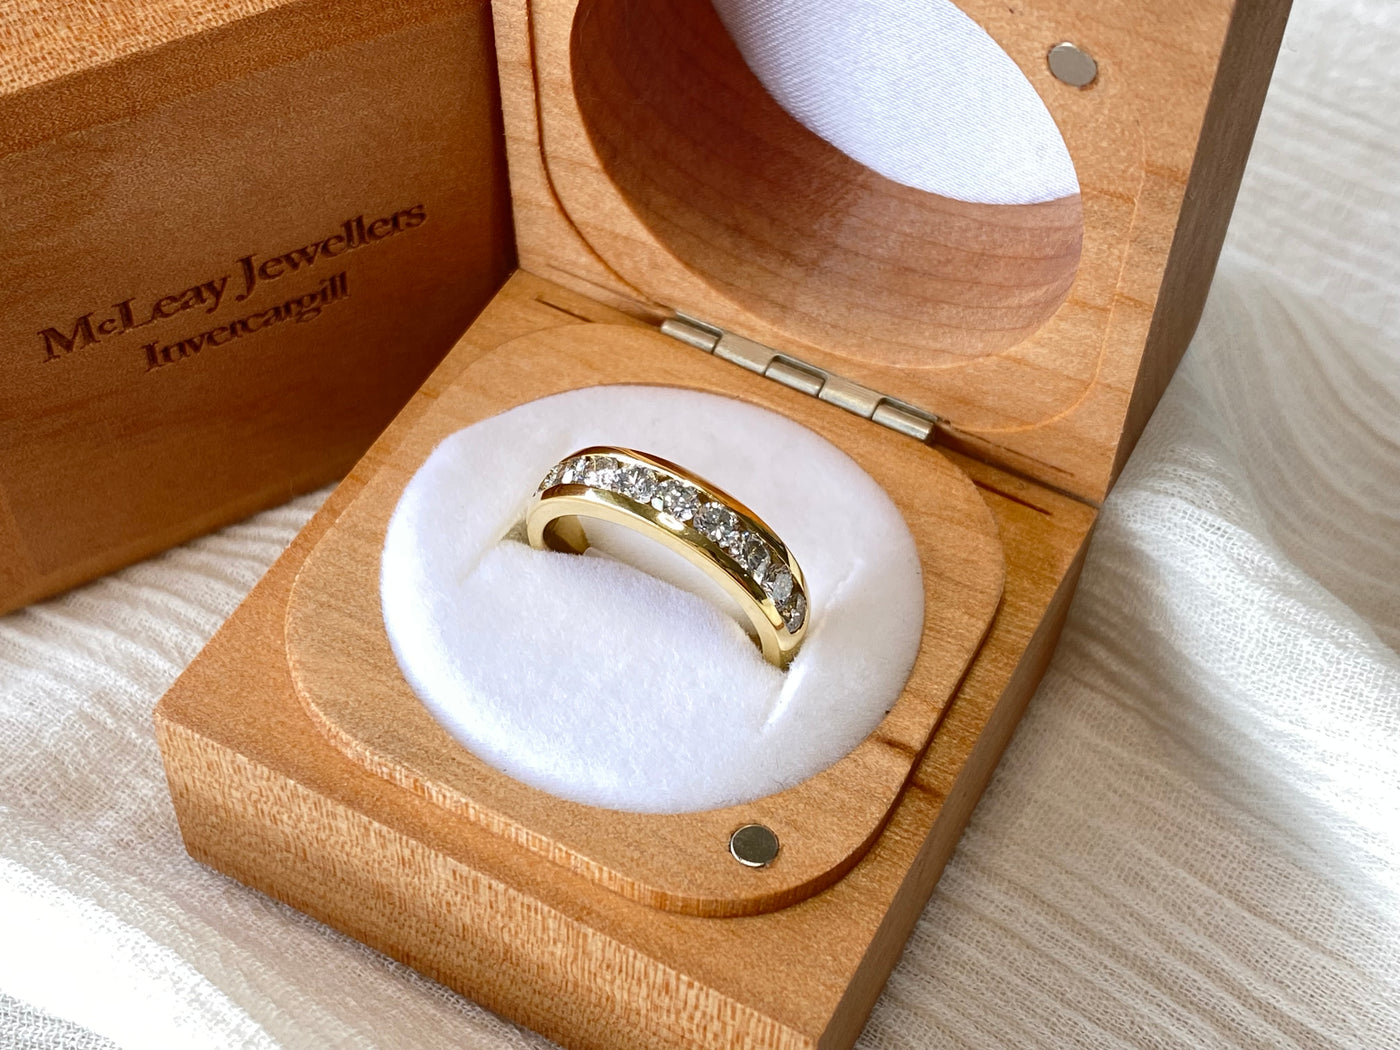 22K Gold 9 Stones Men's Navrattan Ring with Diamond - 235-GR3462 in 8.200  Grams